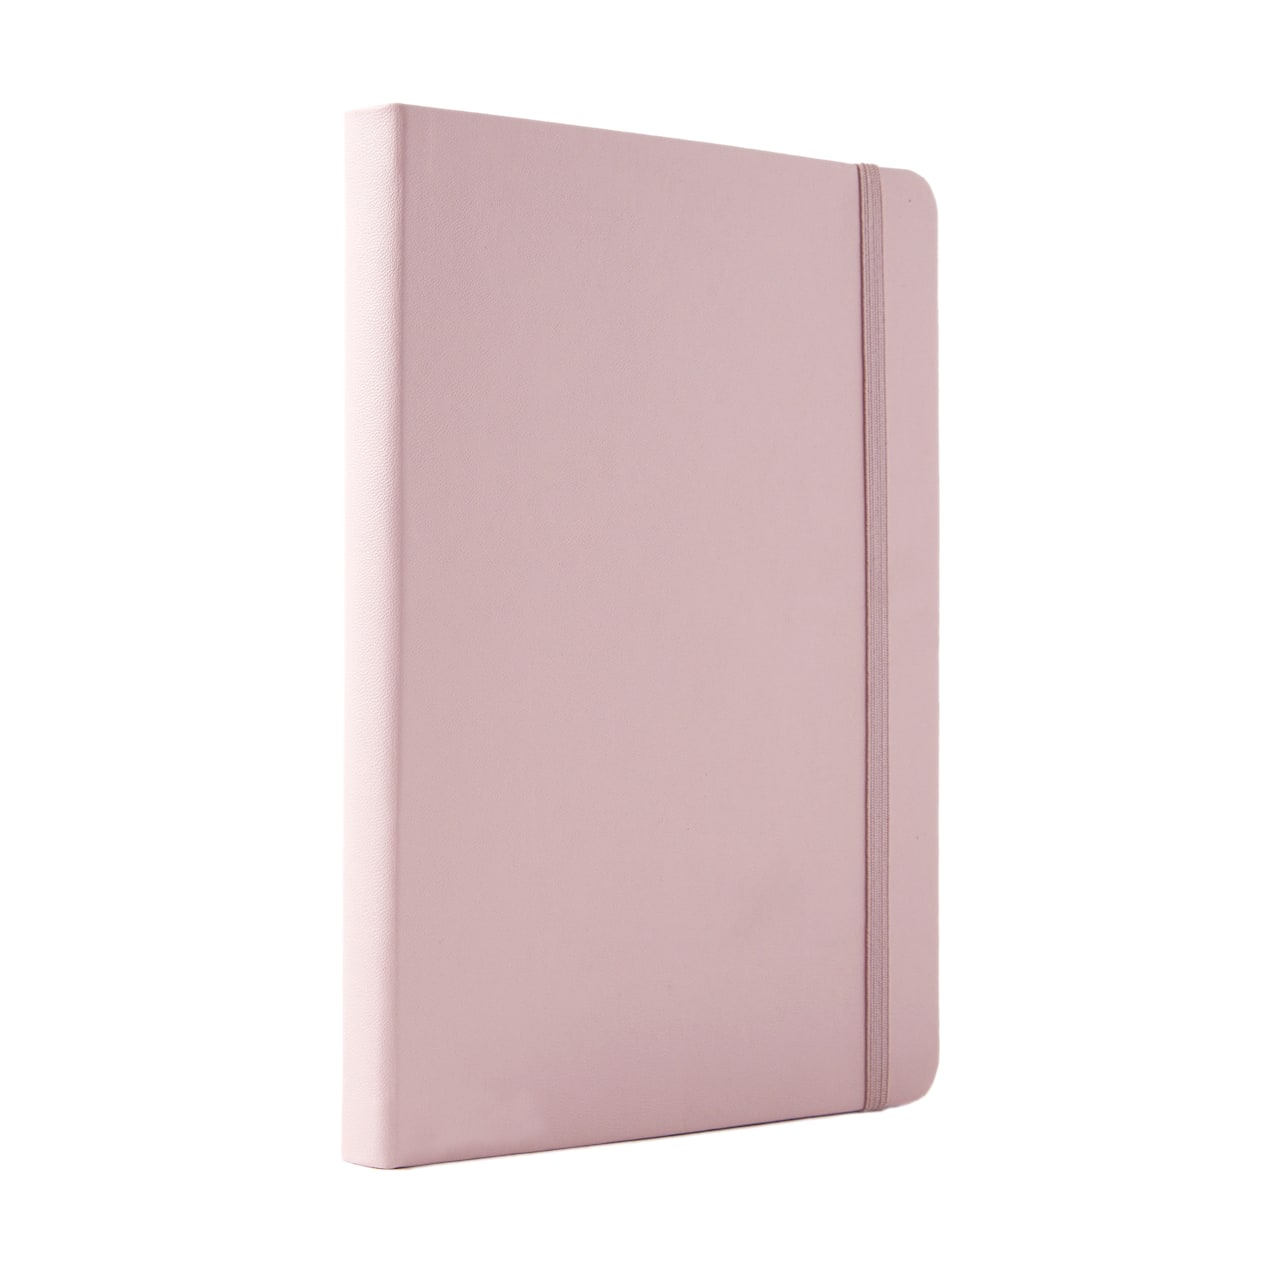 Light Pink Hardcover Dot Journal by Artist&#x27;s Loft&#x2122;